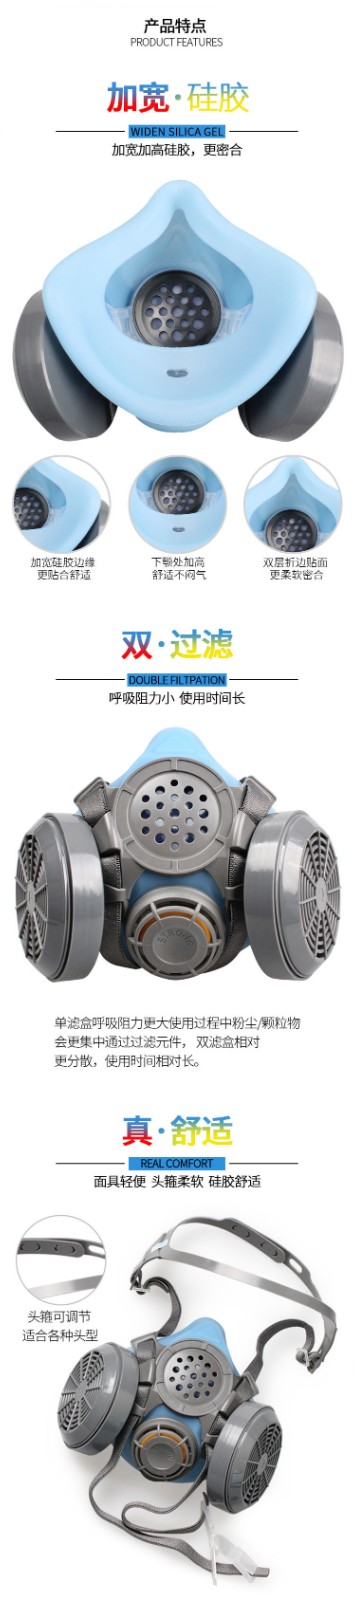 思创ST-M50G-1A硅胶双罐防尘面具图3